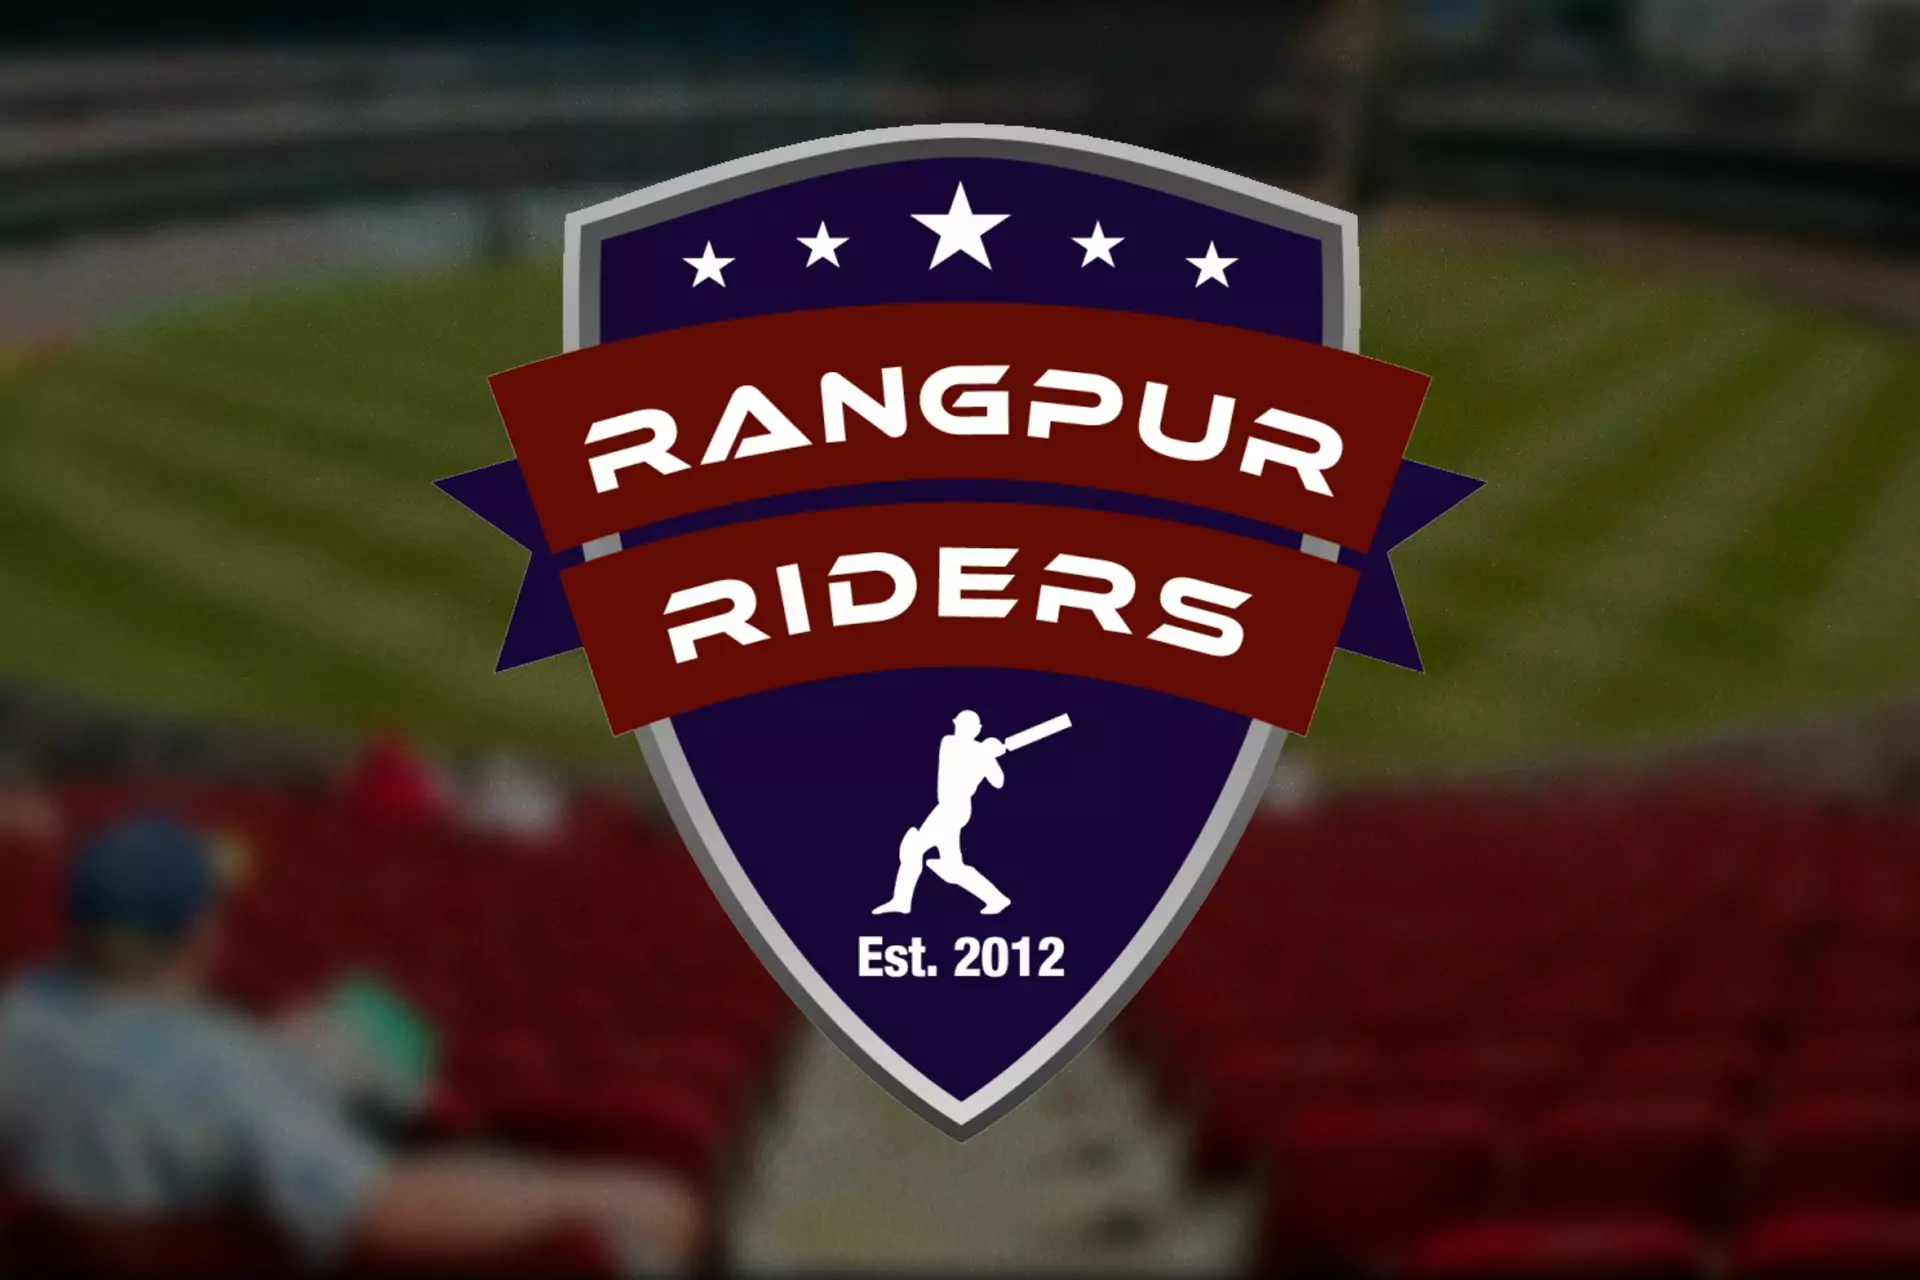 रंगपुर राइडर्स एक टीम है जो 2013 में लीग में शामिल हुई थी।